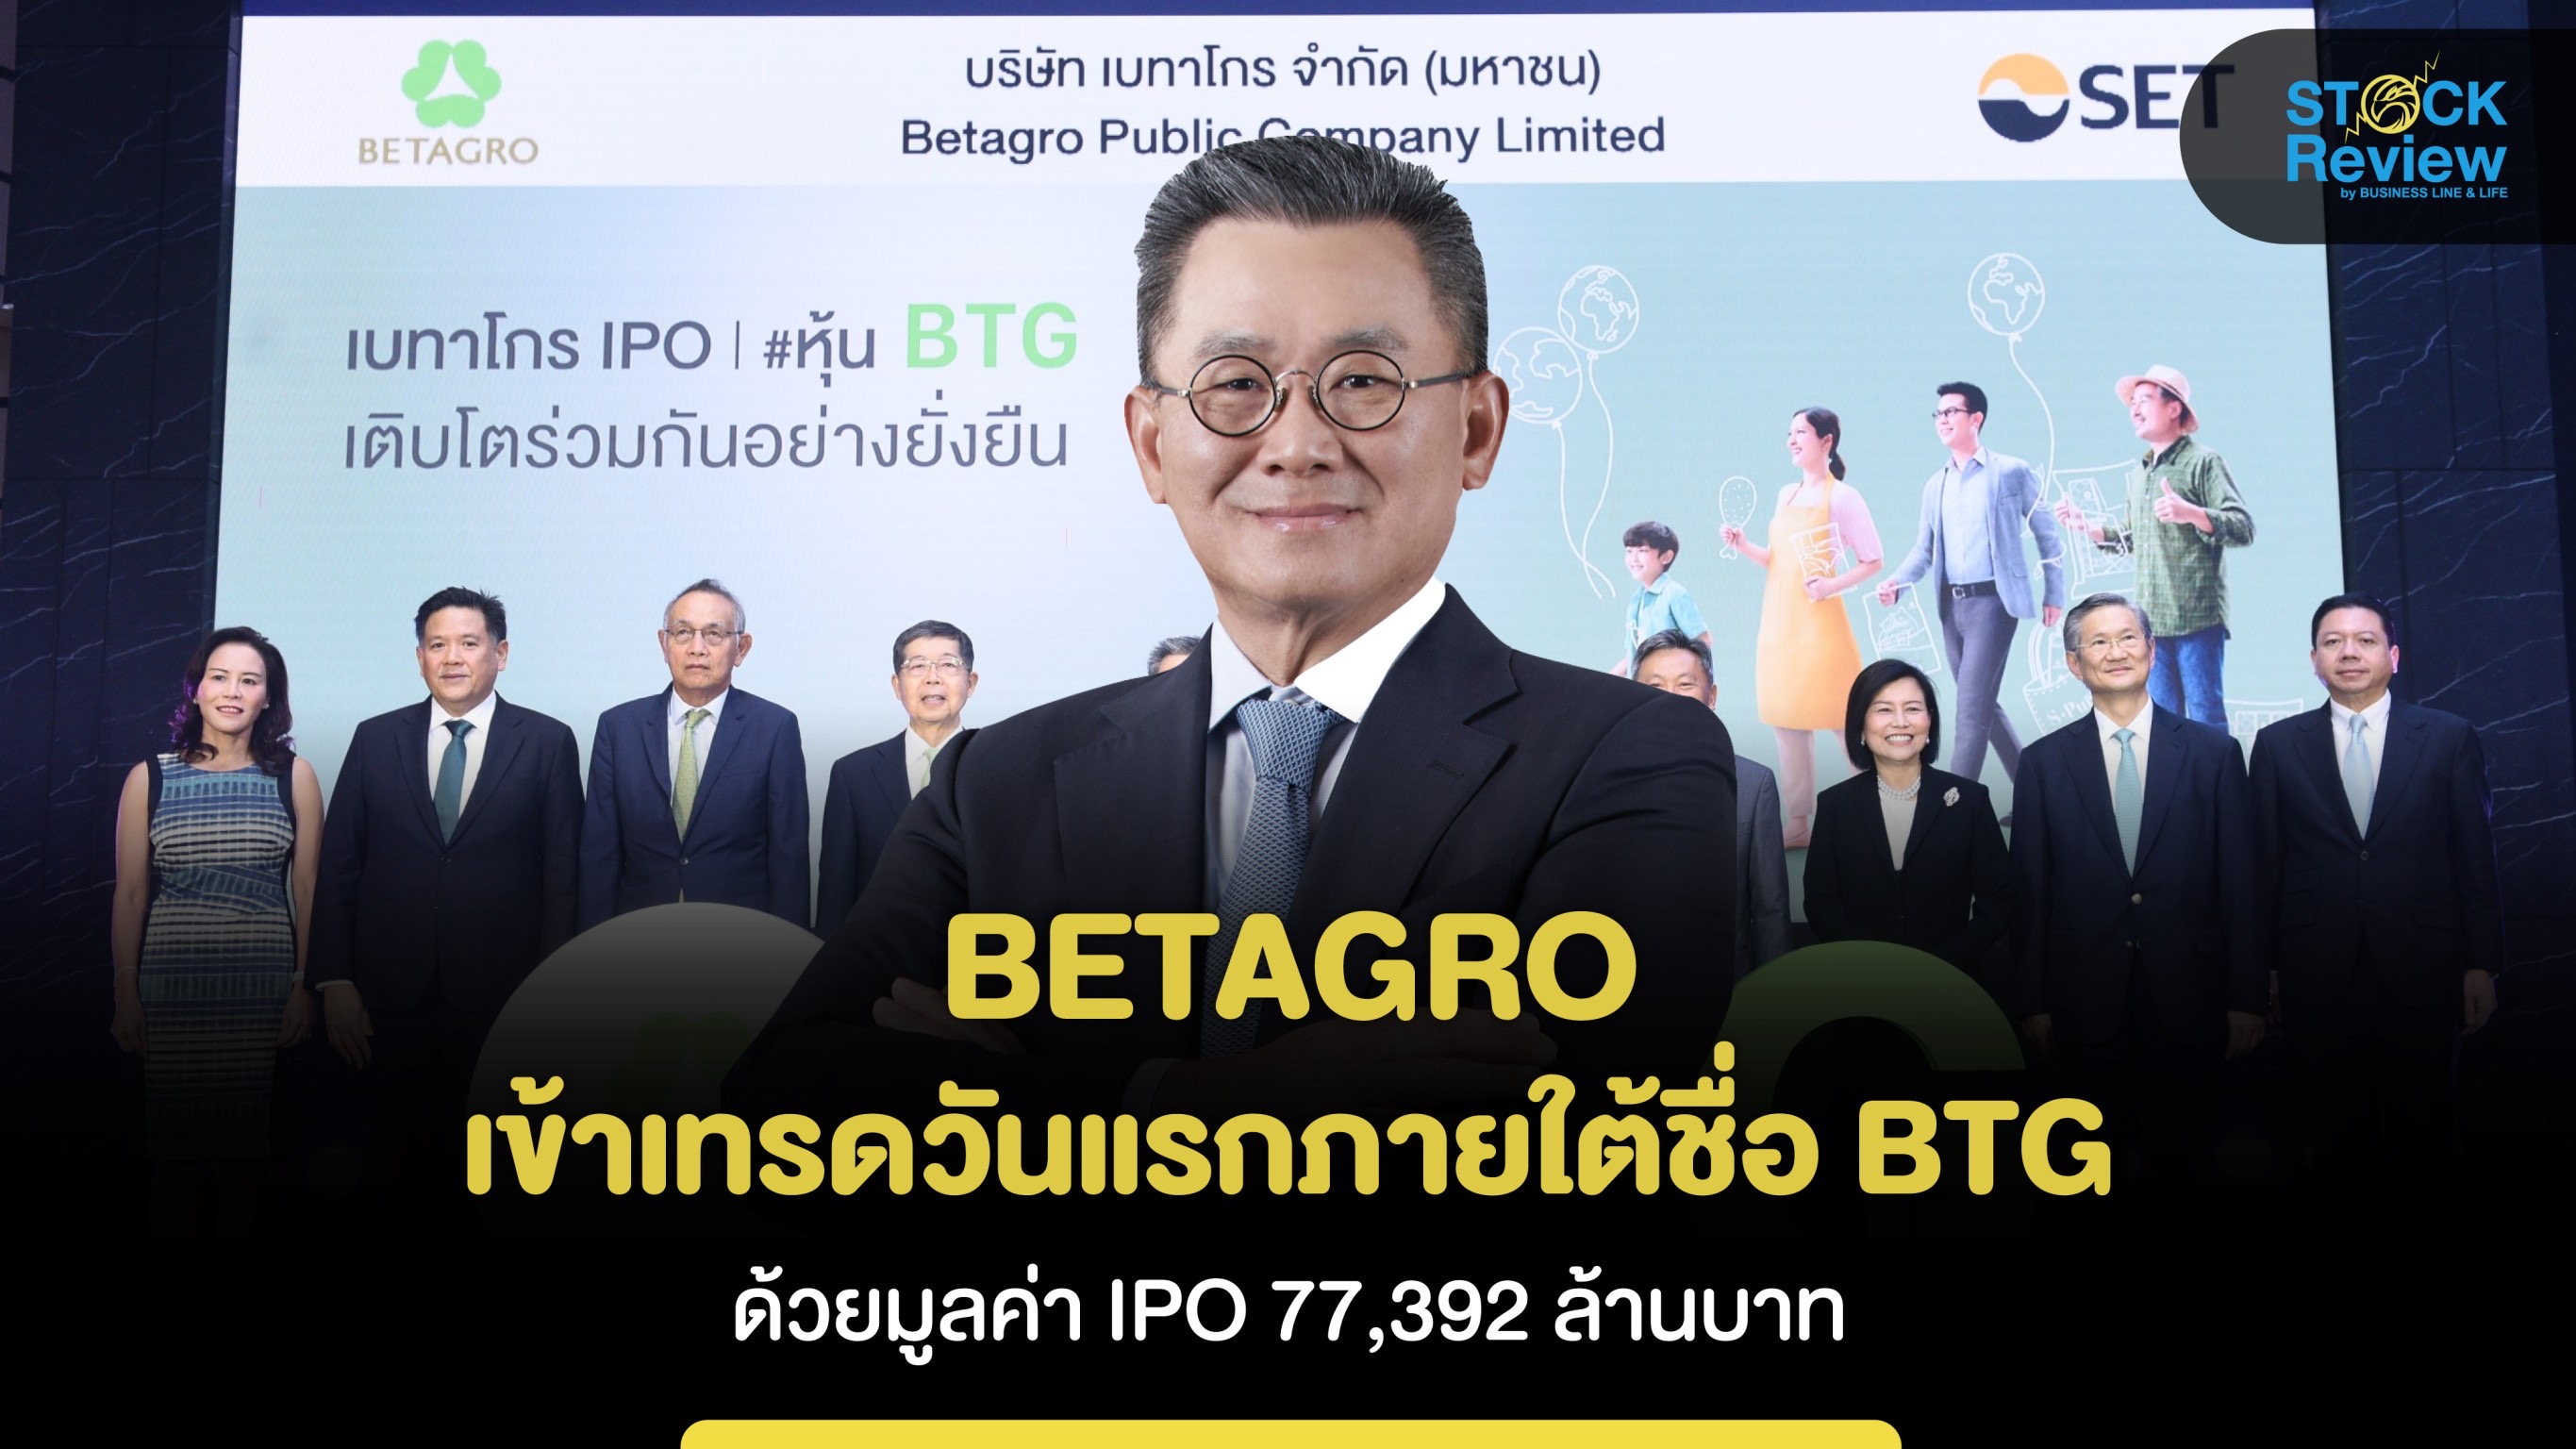 BETAGRO เข้าเทรดวันแรกภายใต้ชื่อ BTG ด้วยมูลค่า IPO 77,392 ล้านบาท